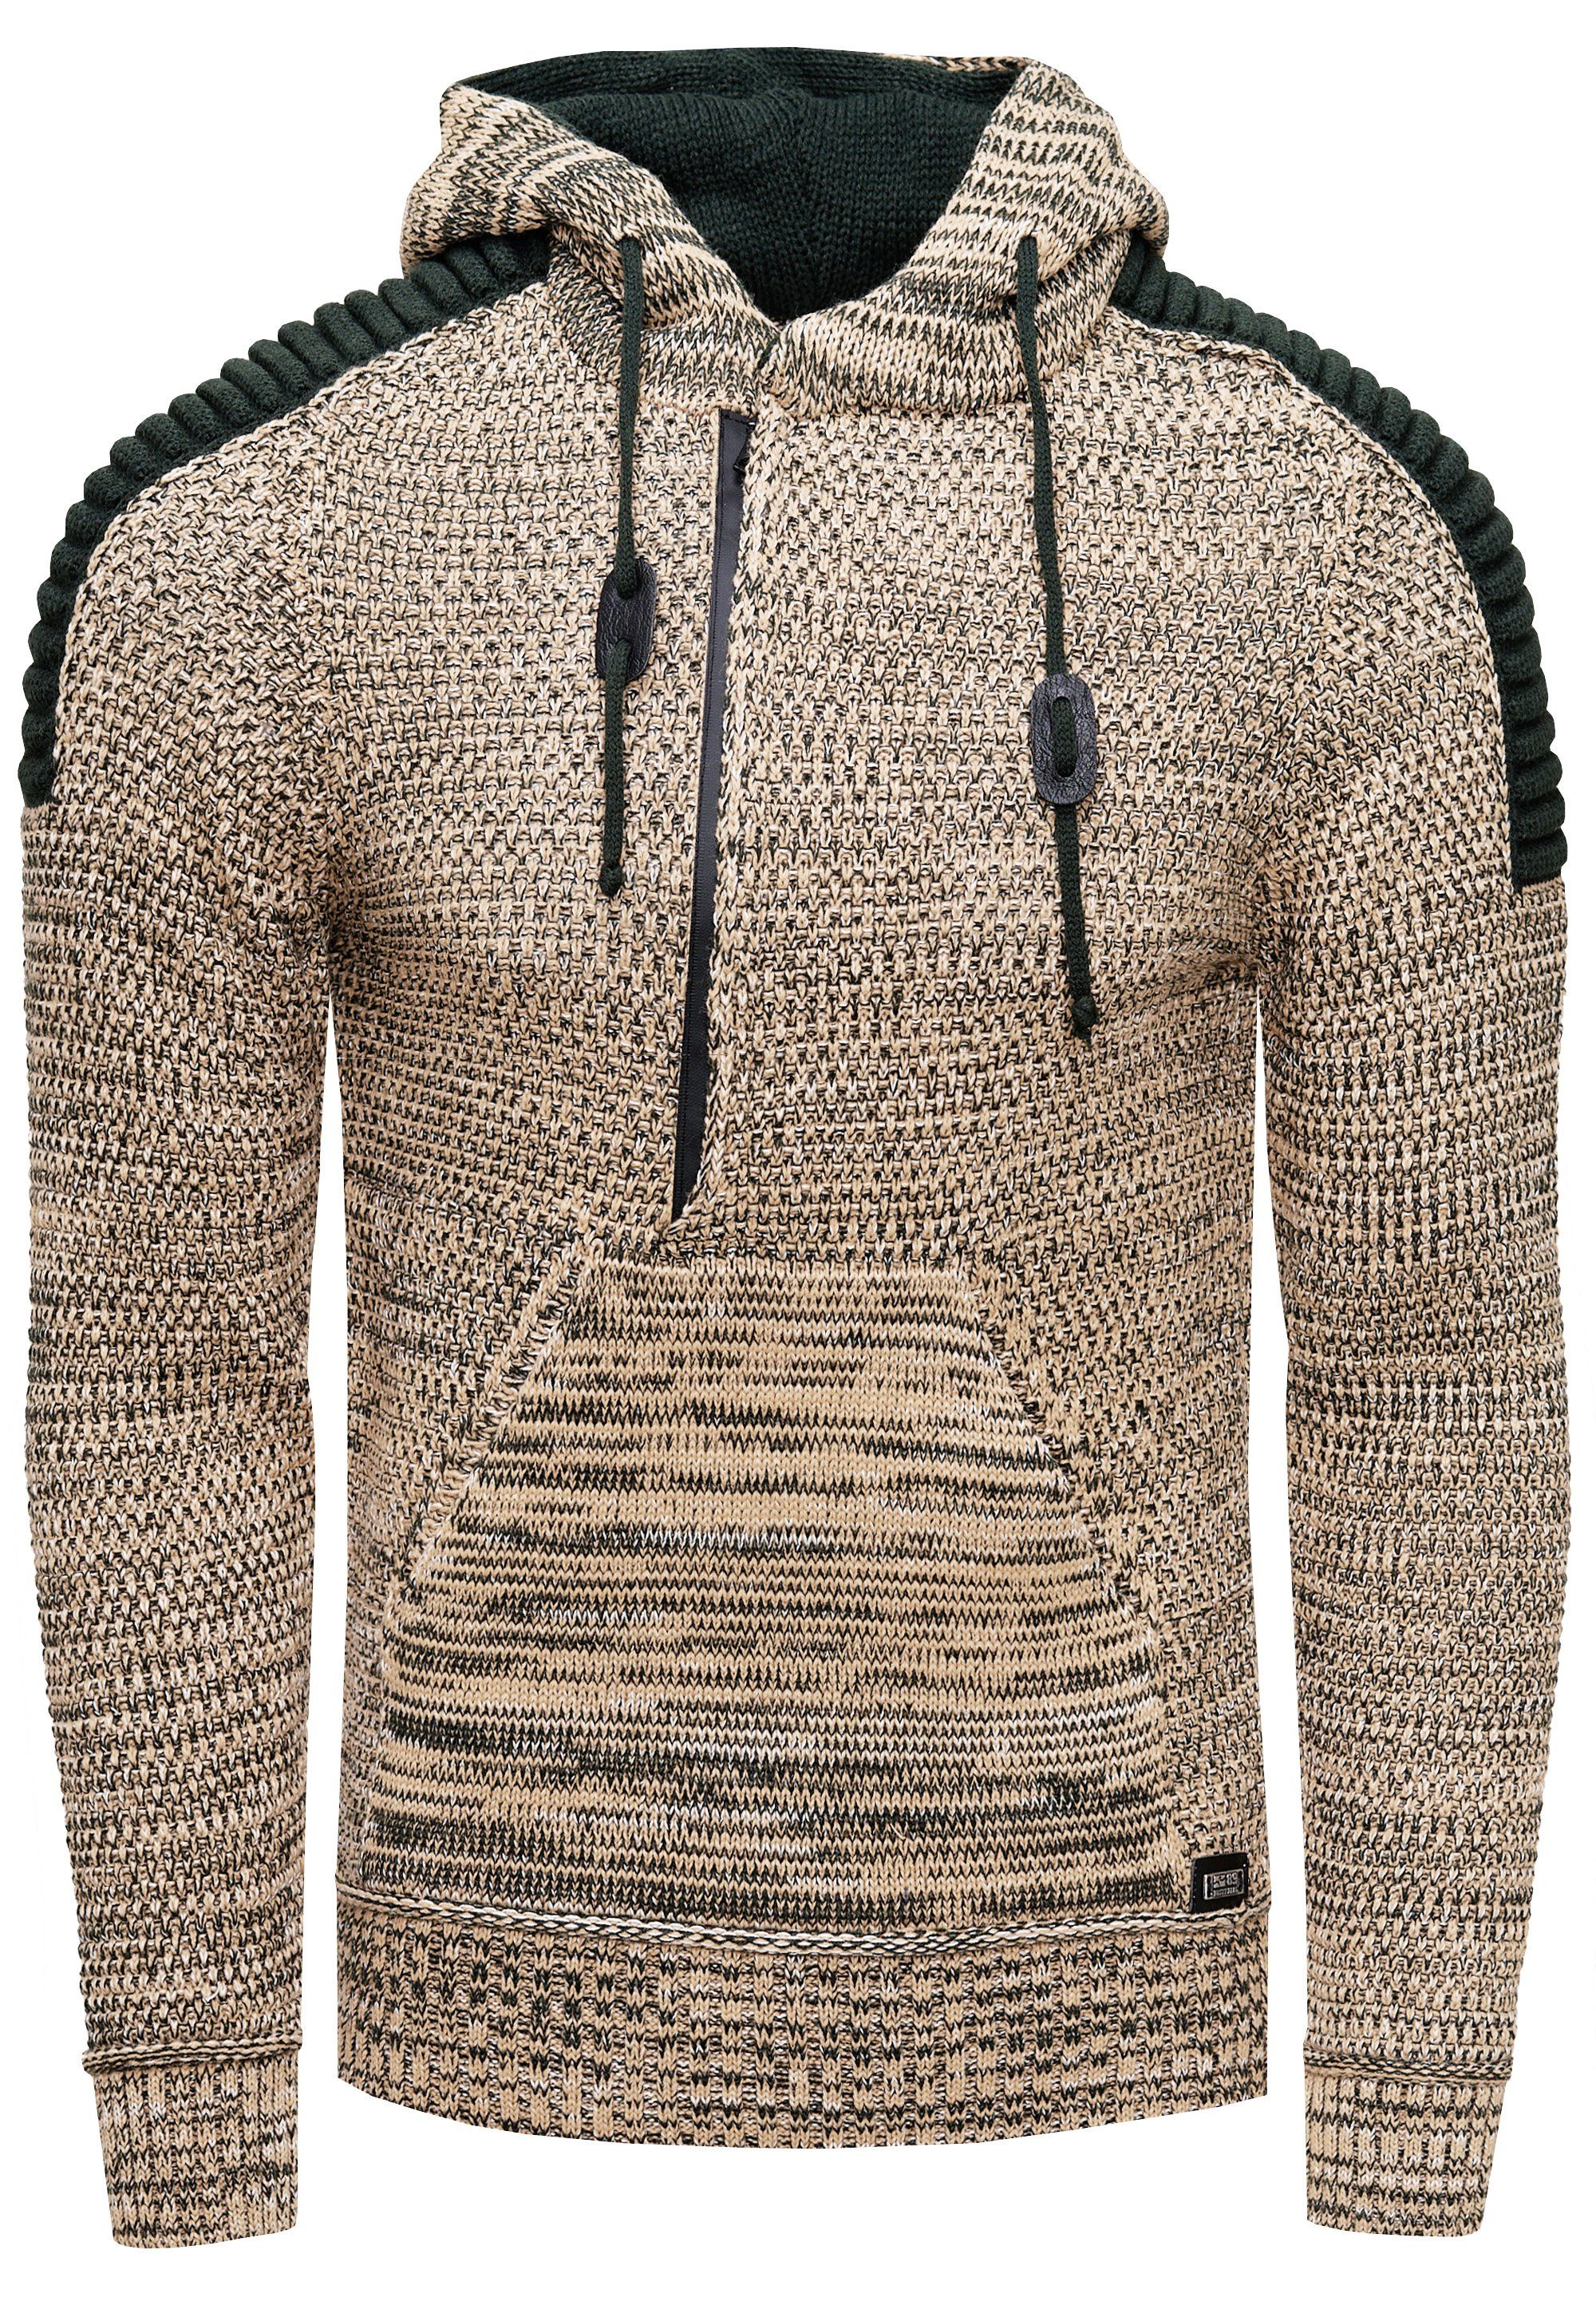 Rusty Neal Kapuzensweatshirt Knitwear mit Reißverschluss camelfarben praktischem